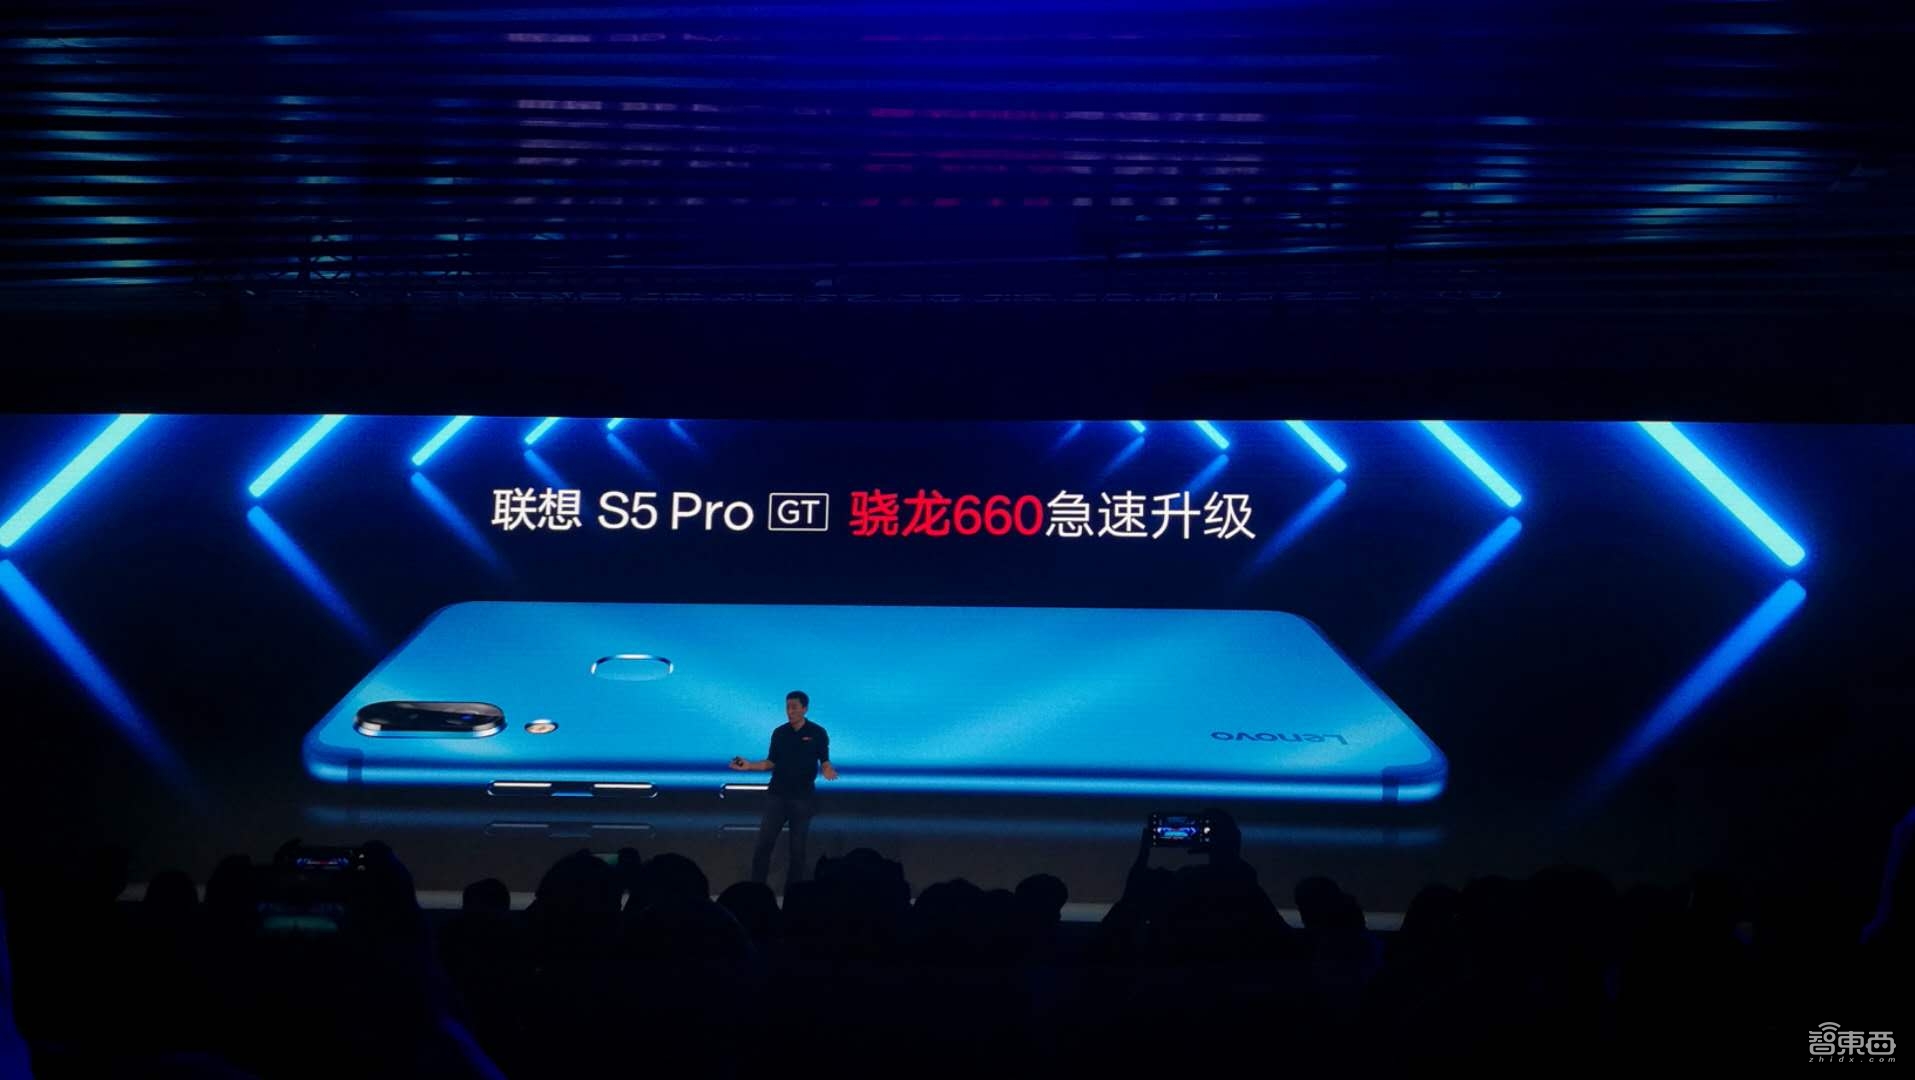 聯想三攝千元機Z5s發布 Z5 Pro挑起驍龍855旗艦價格戰 科技 第1張